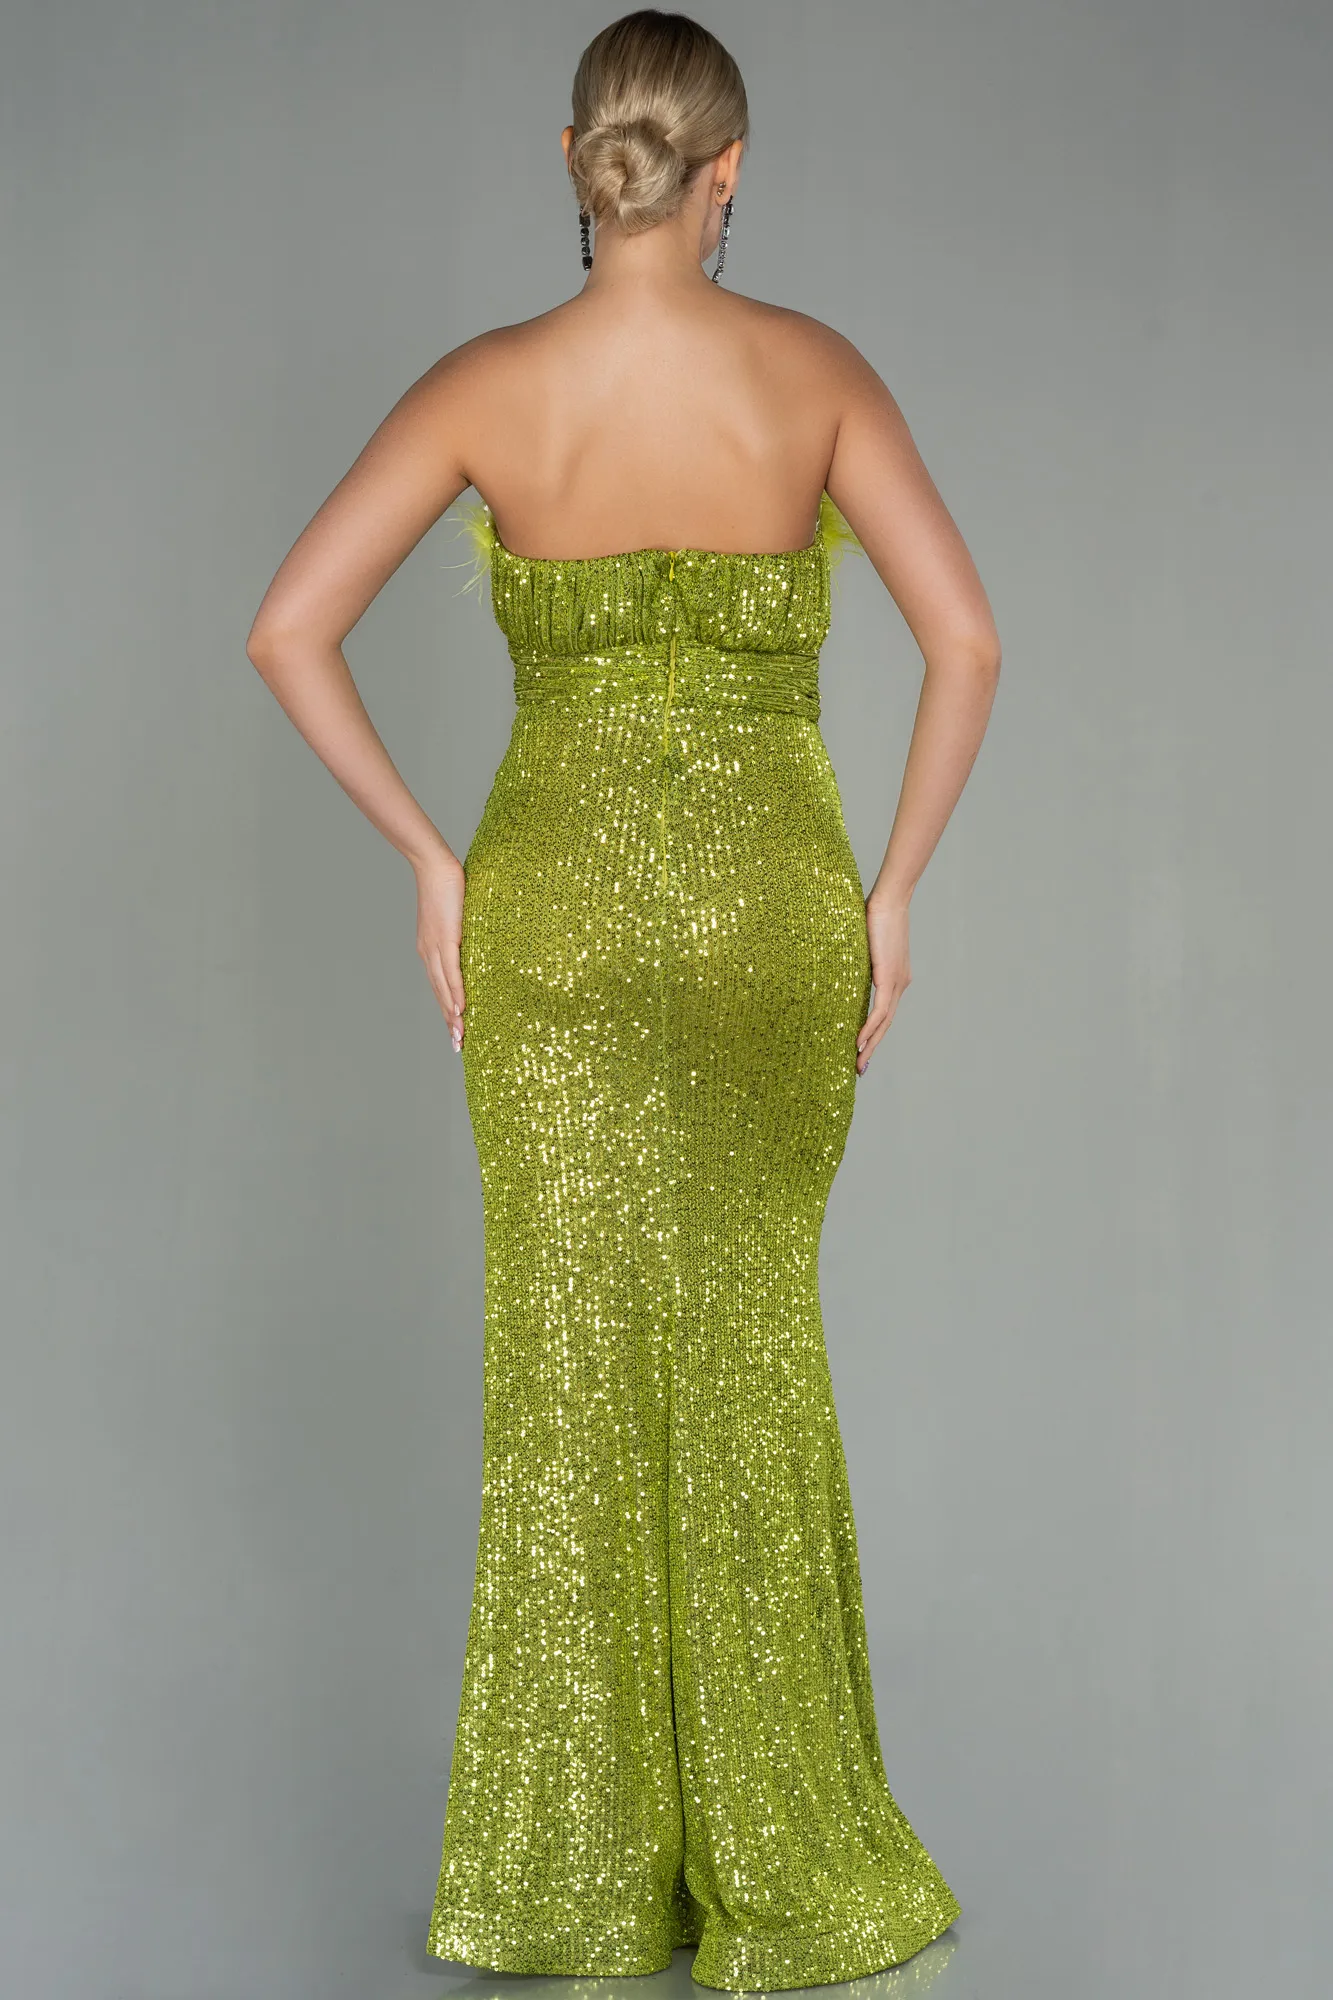 Pistachio Green-Long Scaly Evening Dress ABU3067